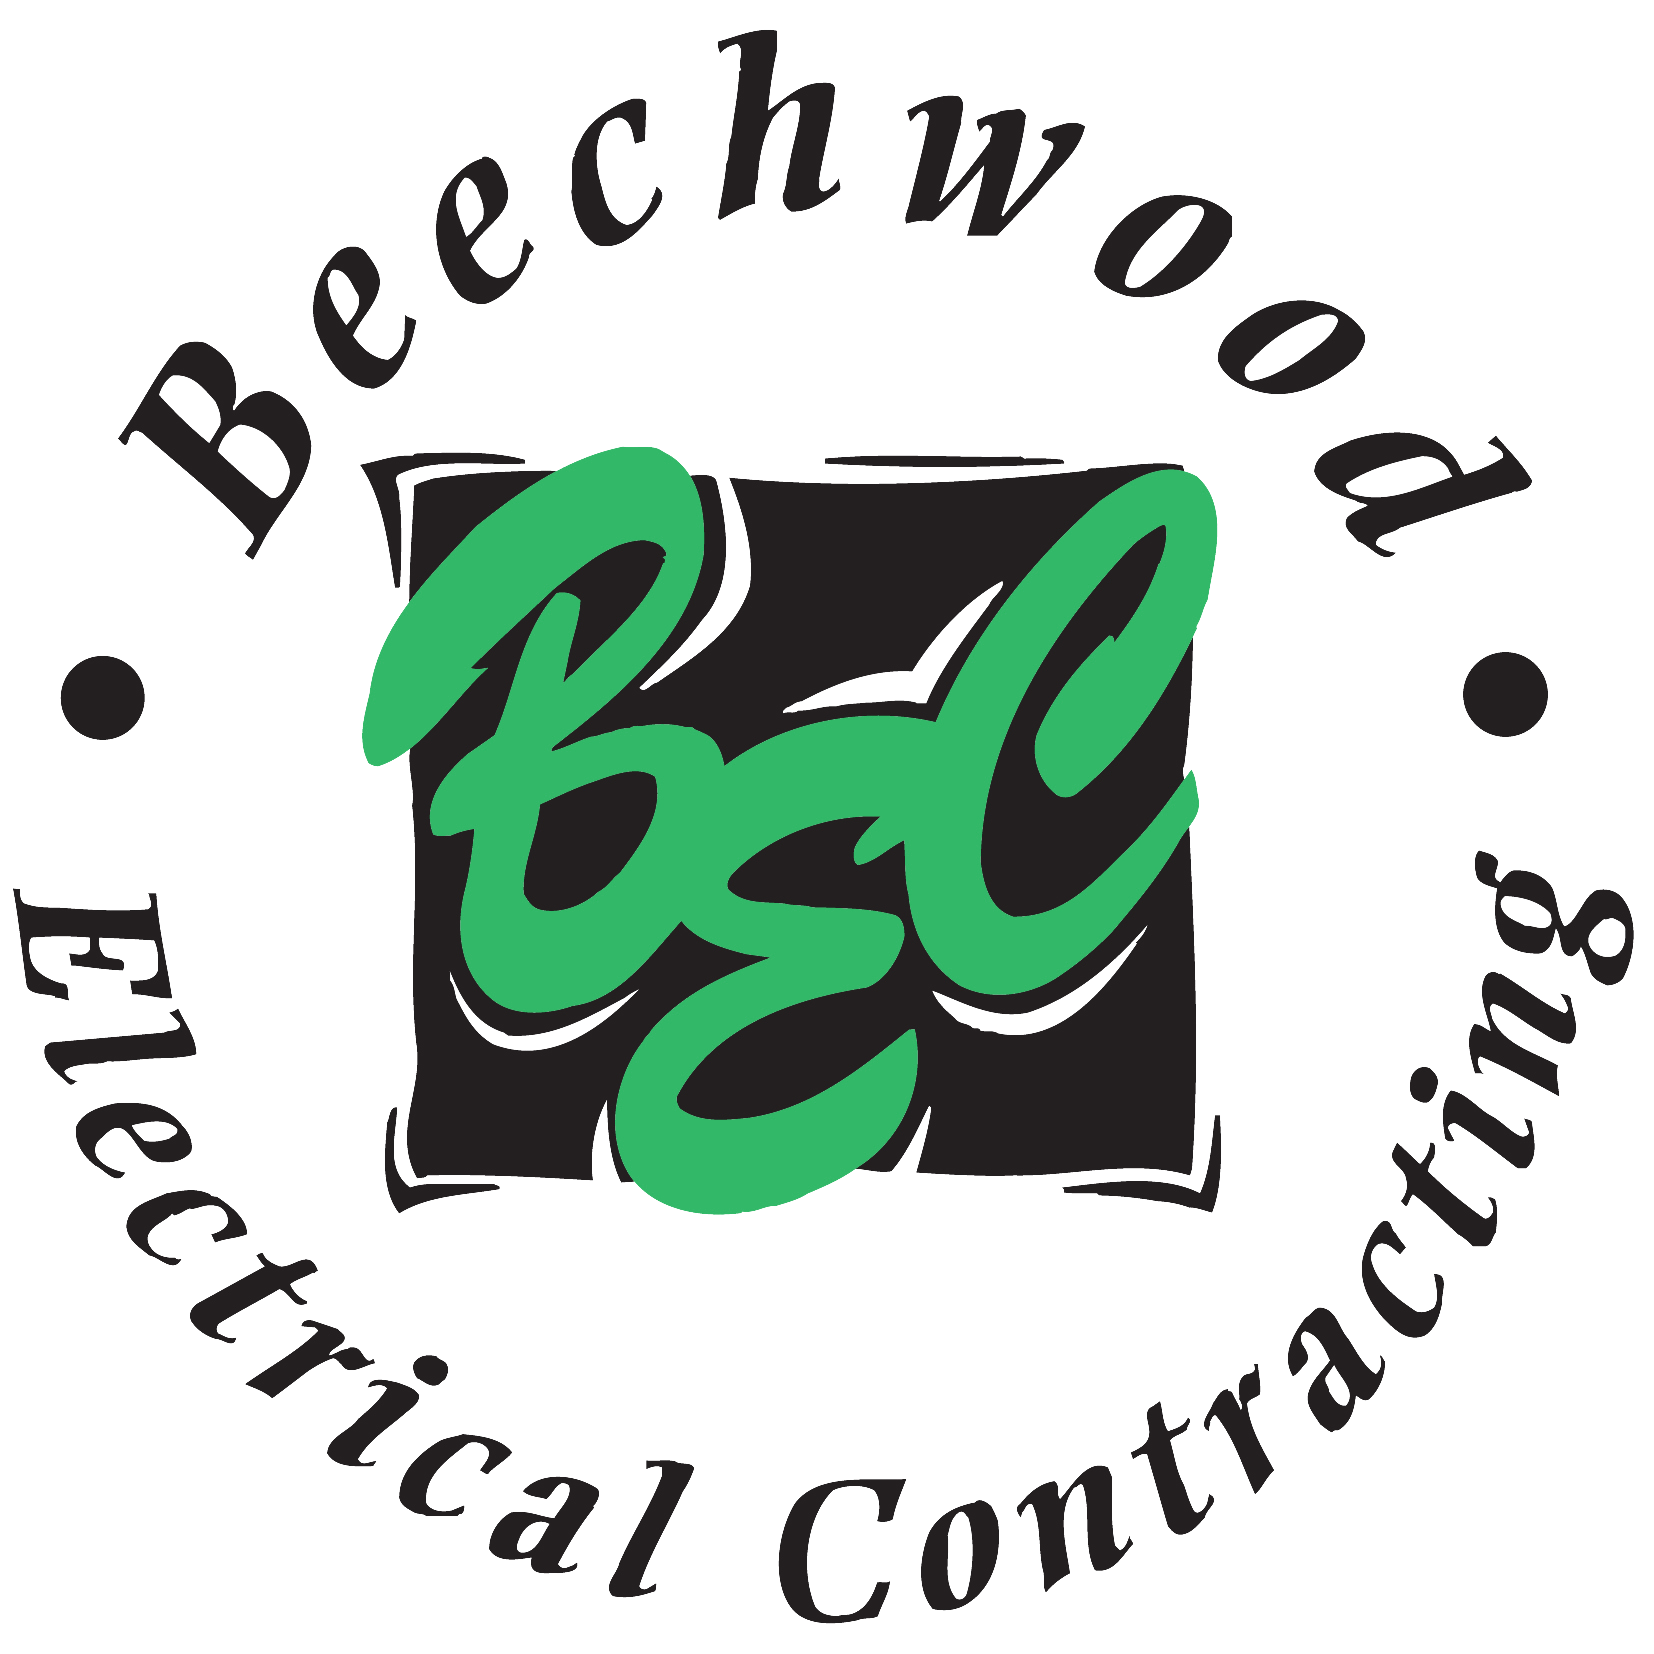 Beechwood Electrical Contracting